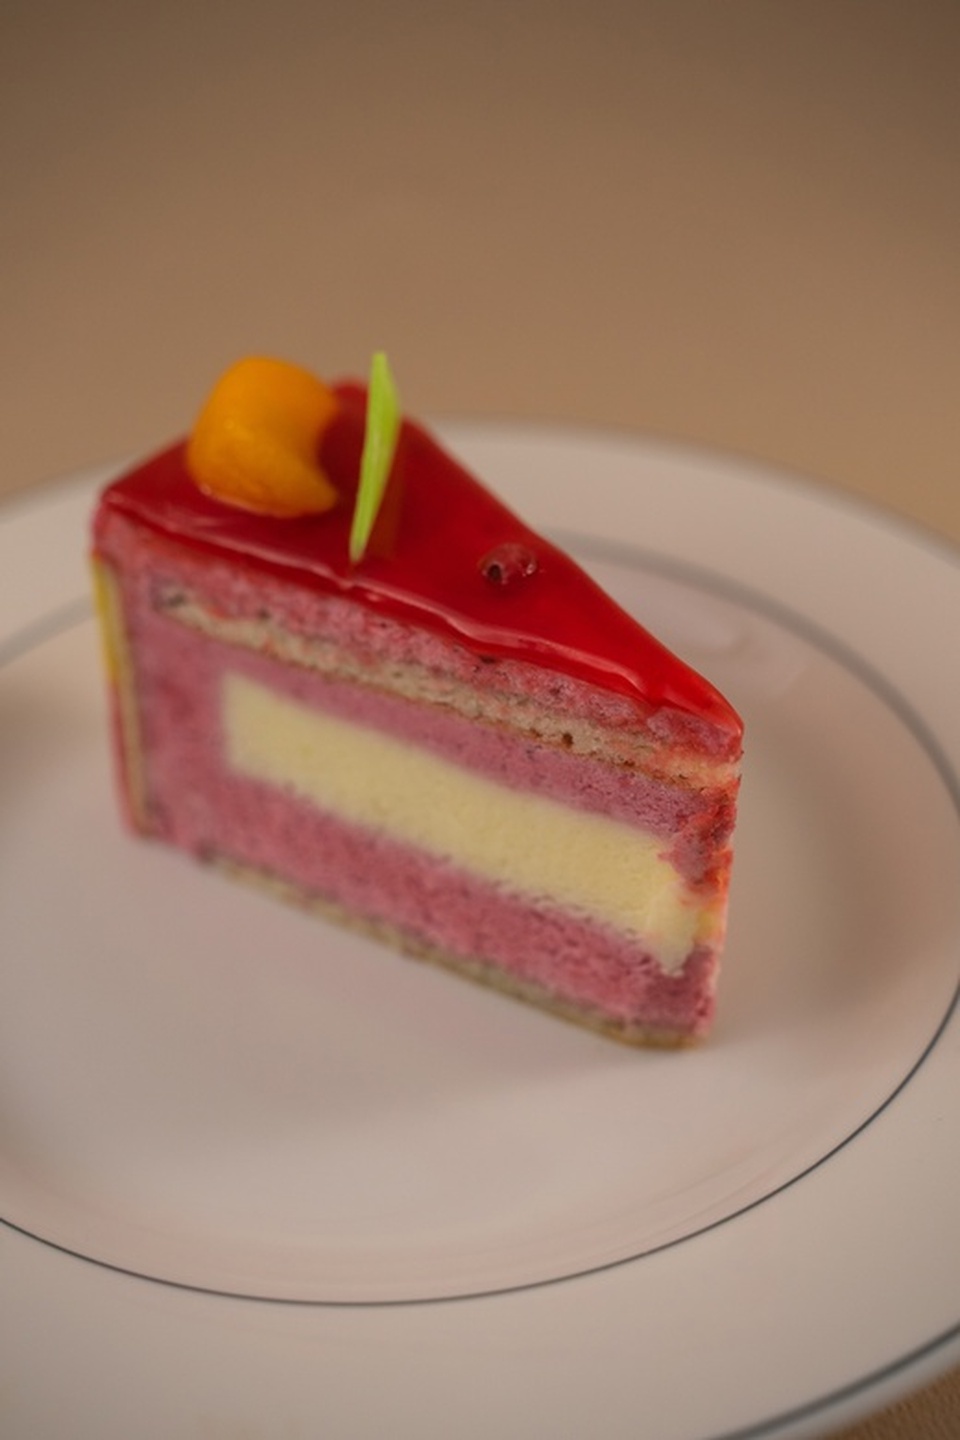 Пирожное "Фантазия" - 190 ₽, заказать онлайн.